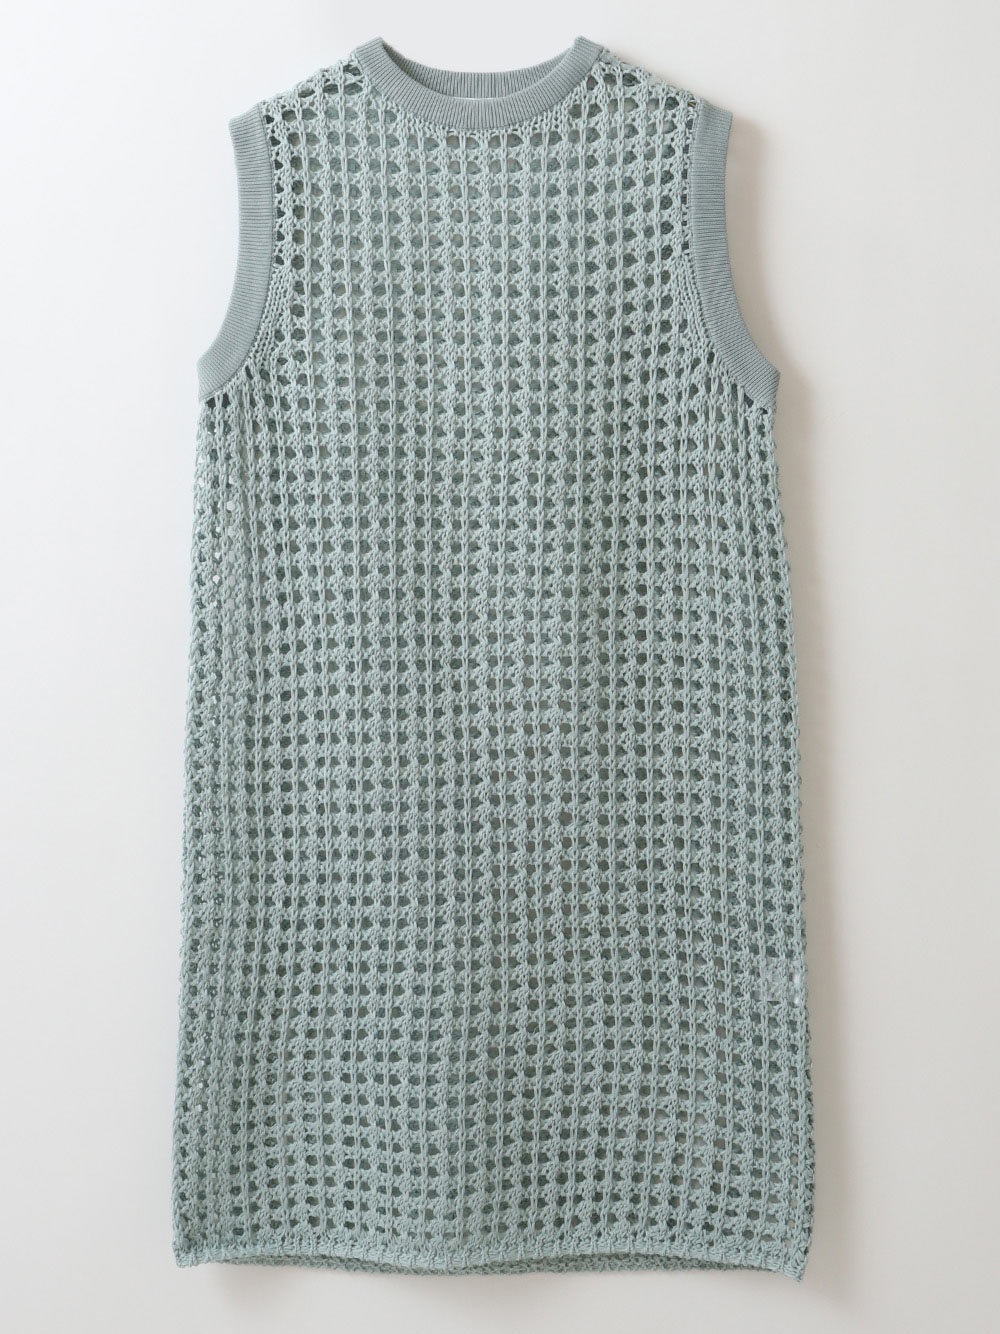 Pattern Knit Dress(71ブルー-フリー)